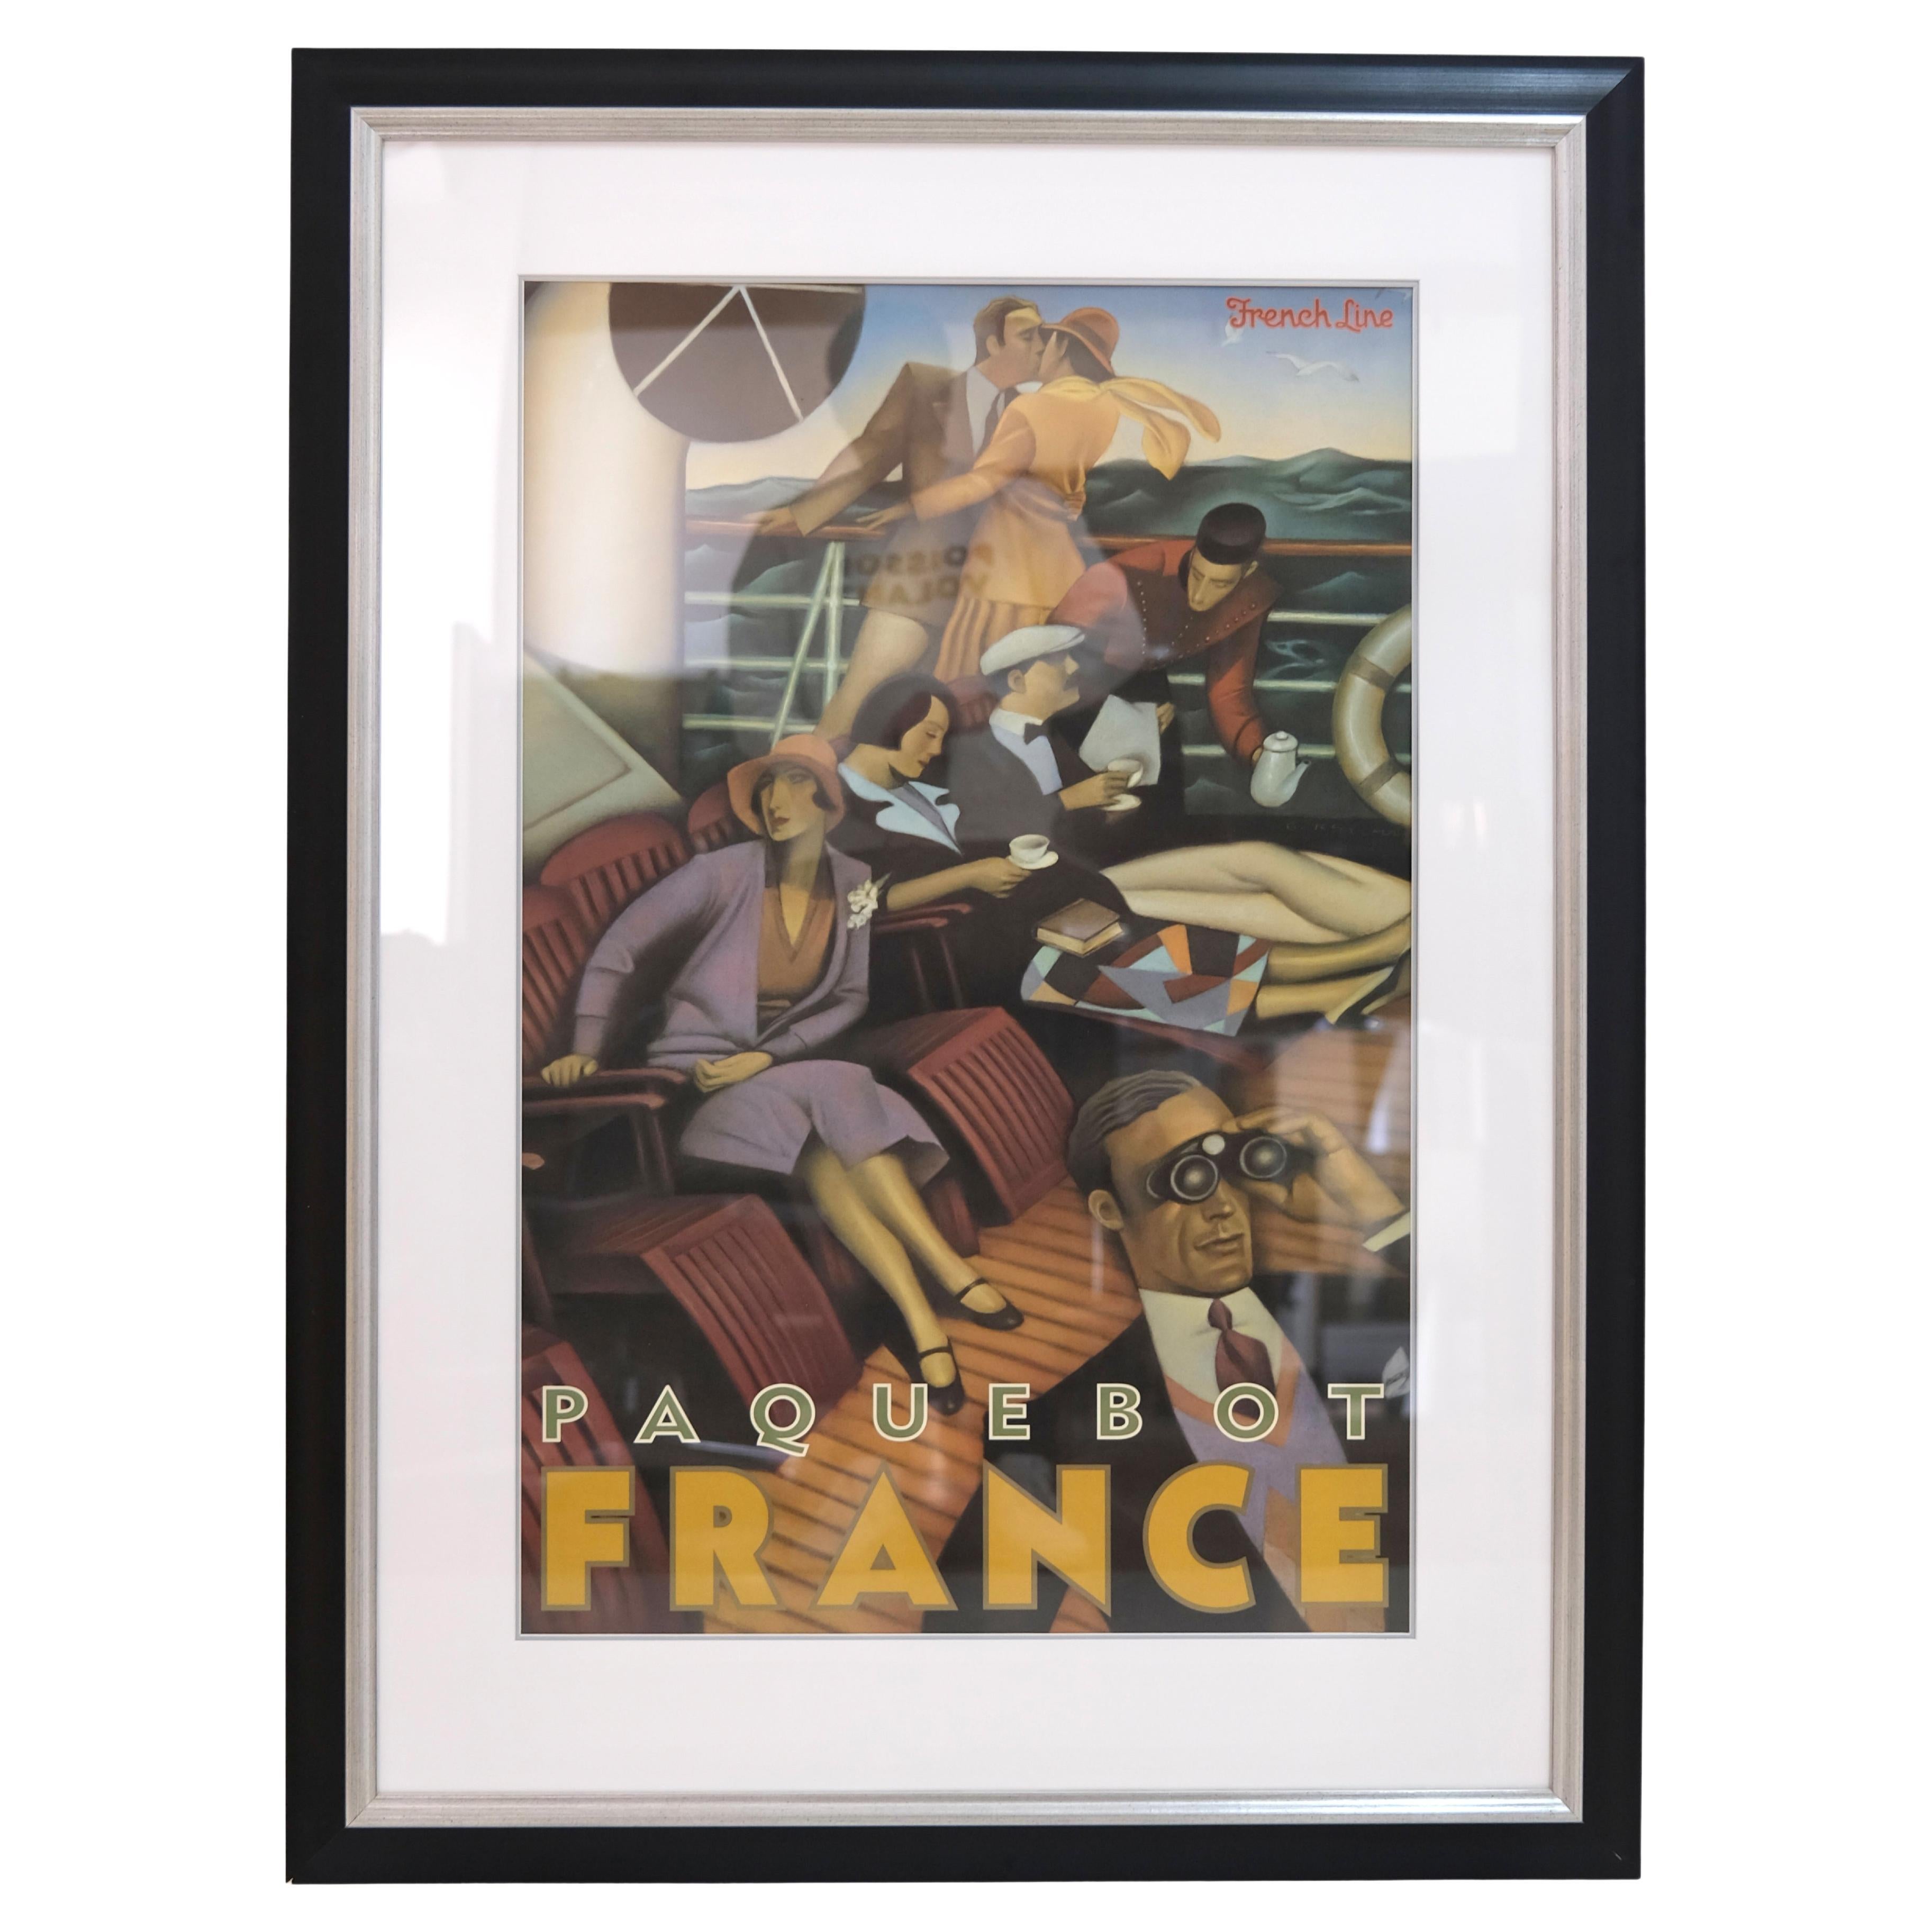 1960/70's Poster Paquebot France Promotion for the Transatlantic Liner France